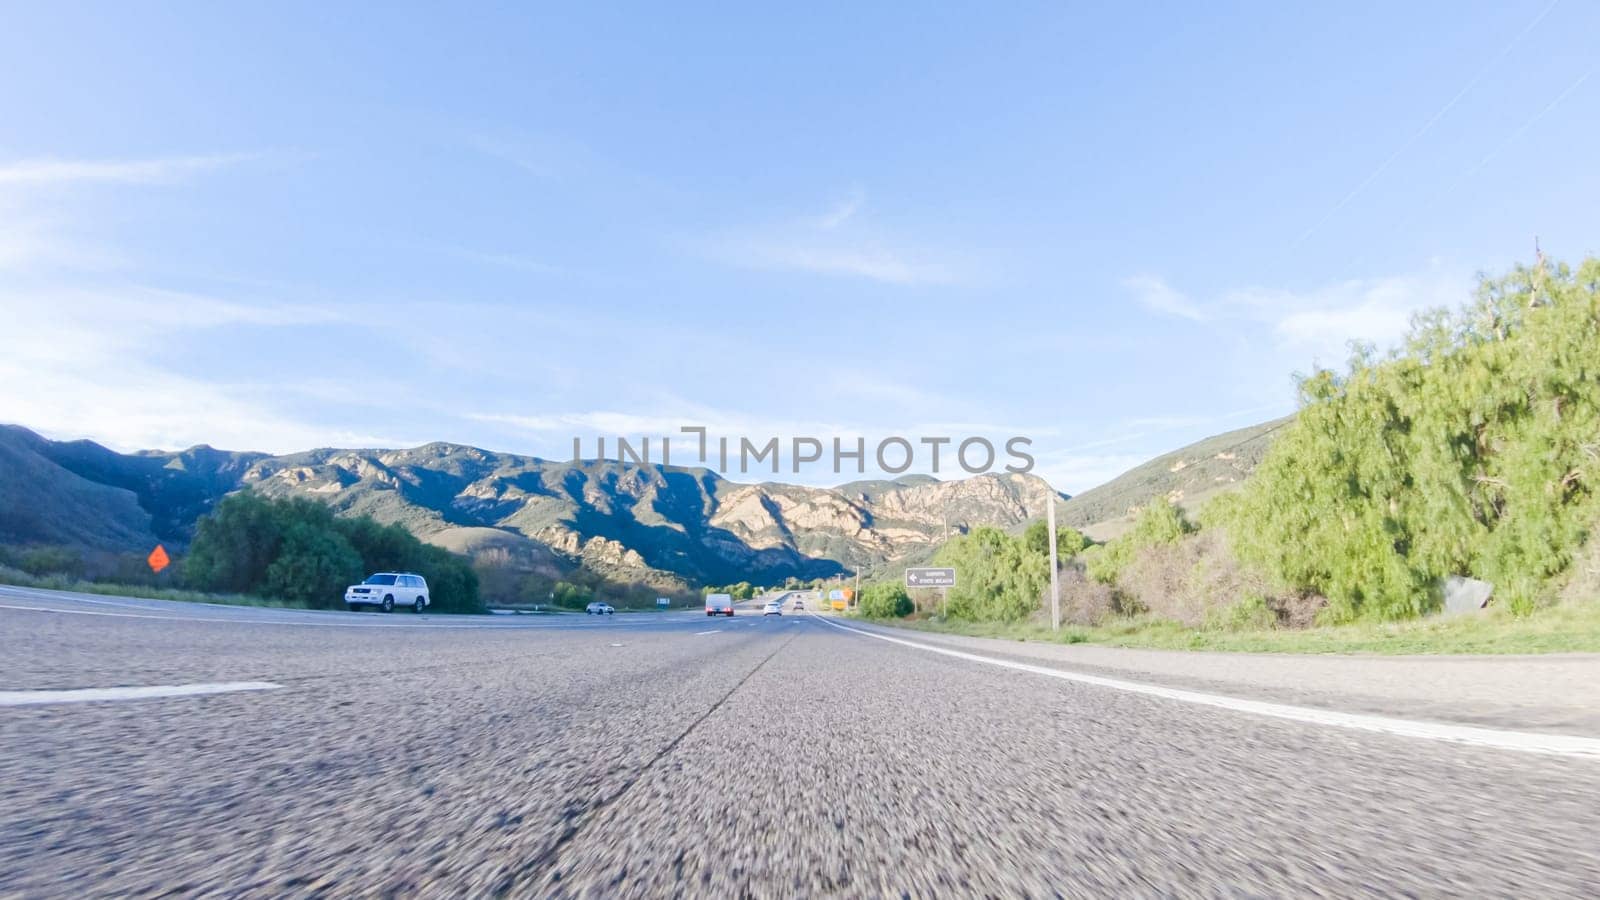 Scenic Day Drive on HWY 101, El Capitan Beach by arinahabich